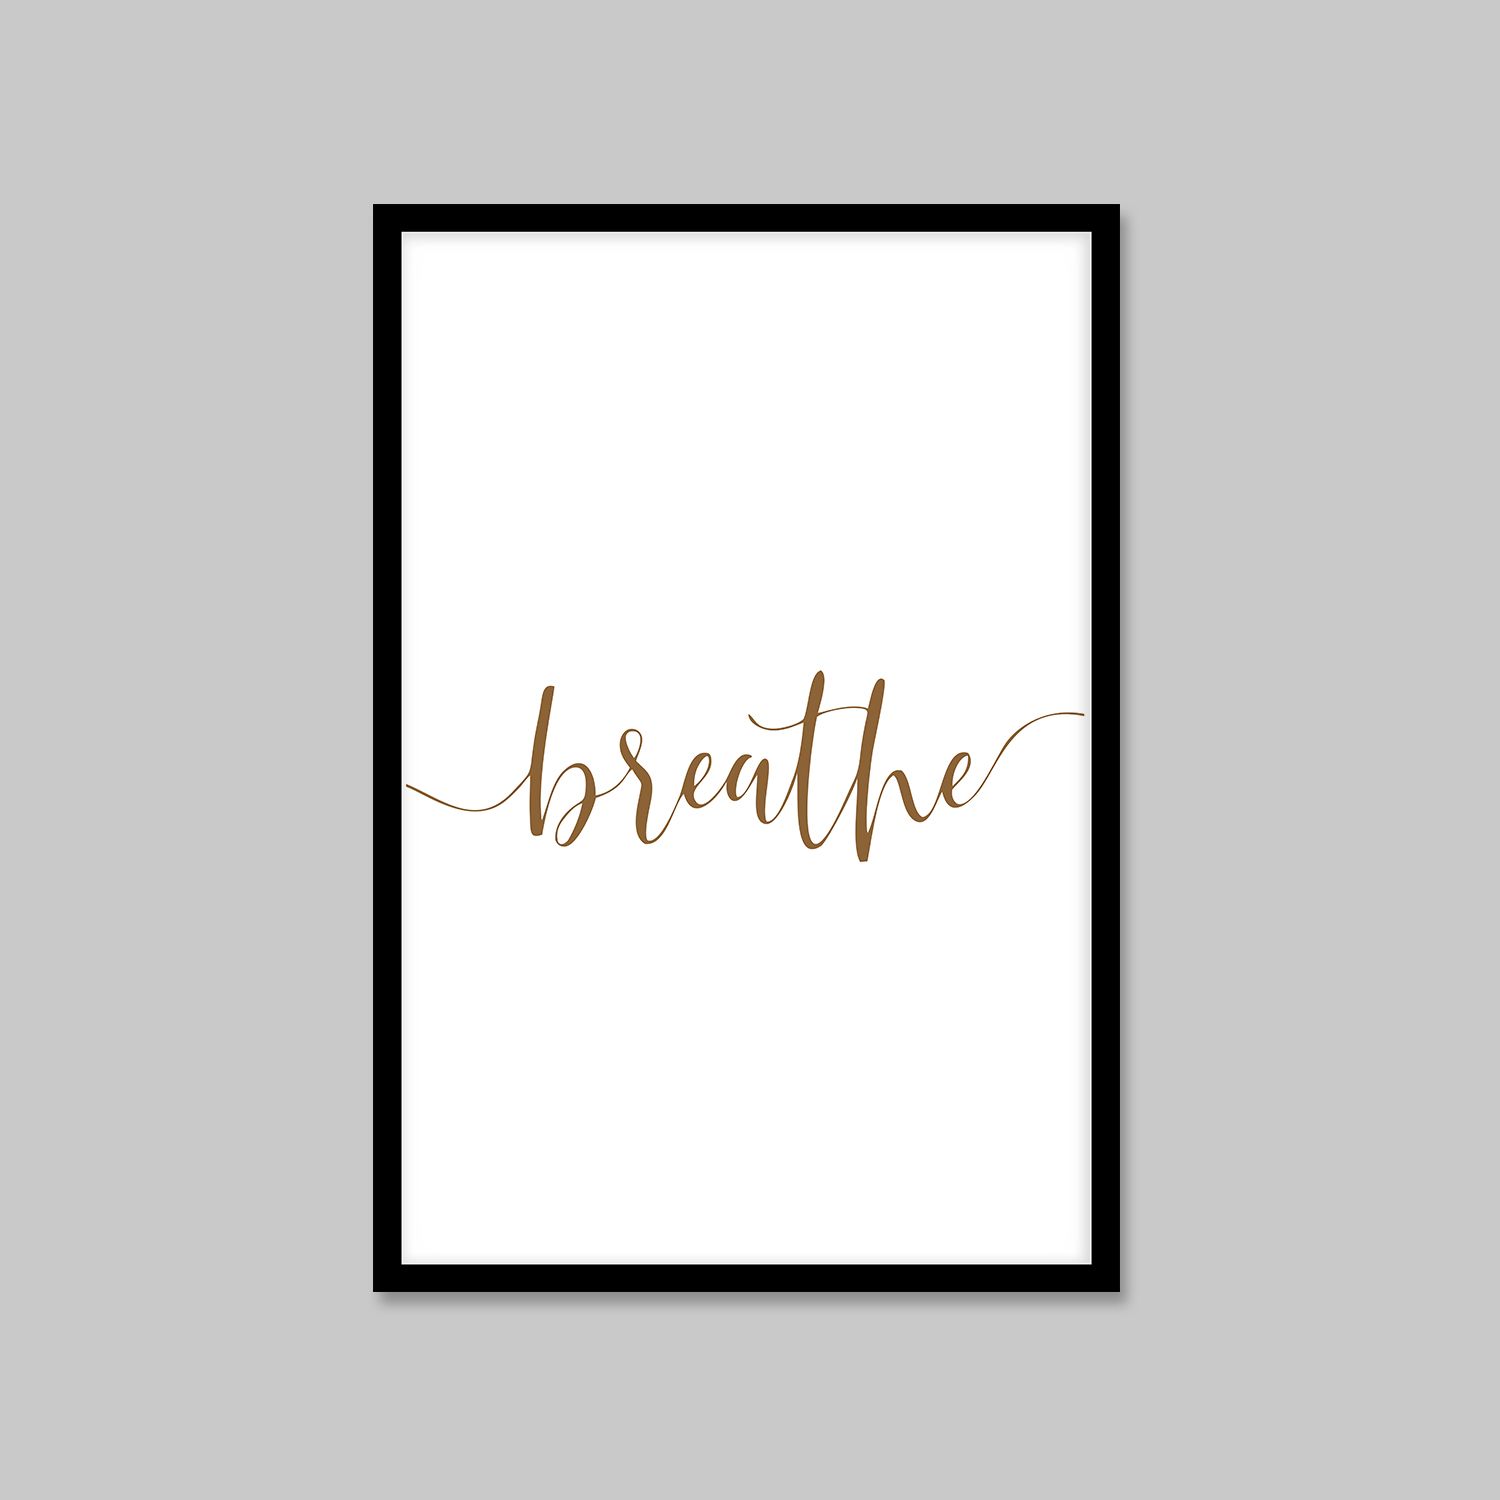 Постер "Breathe"